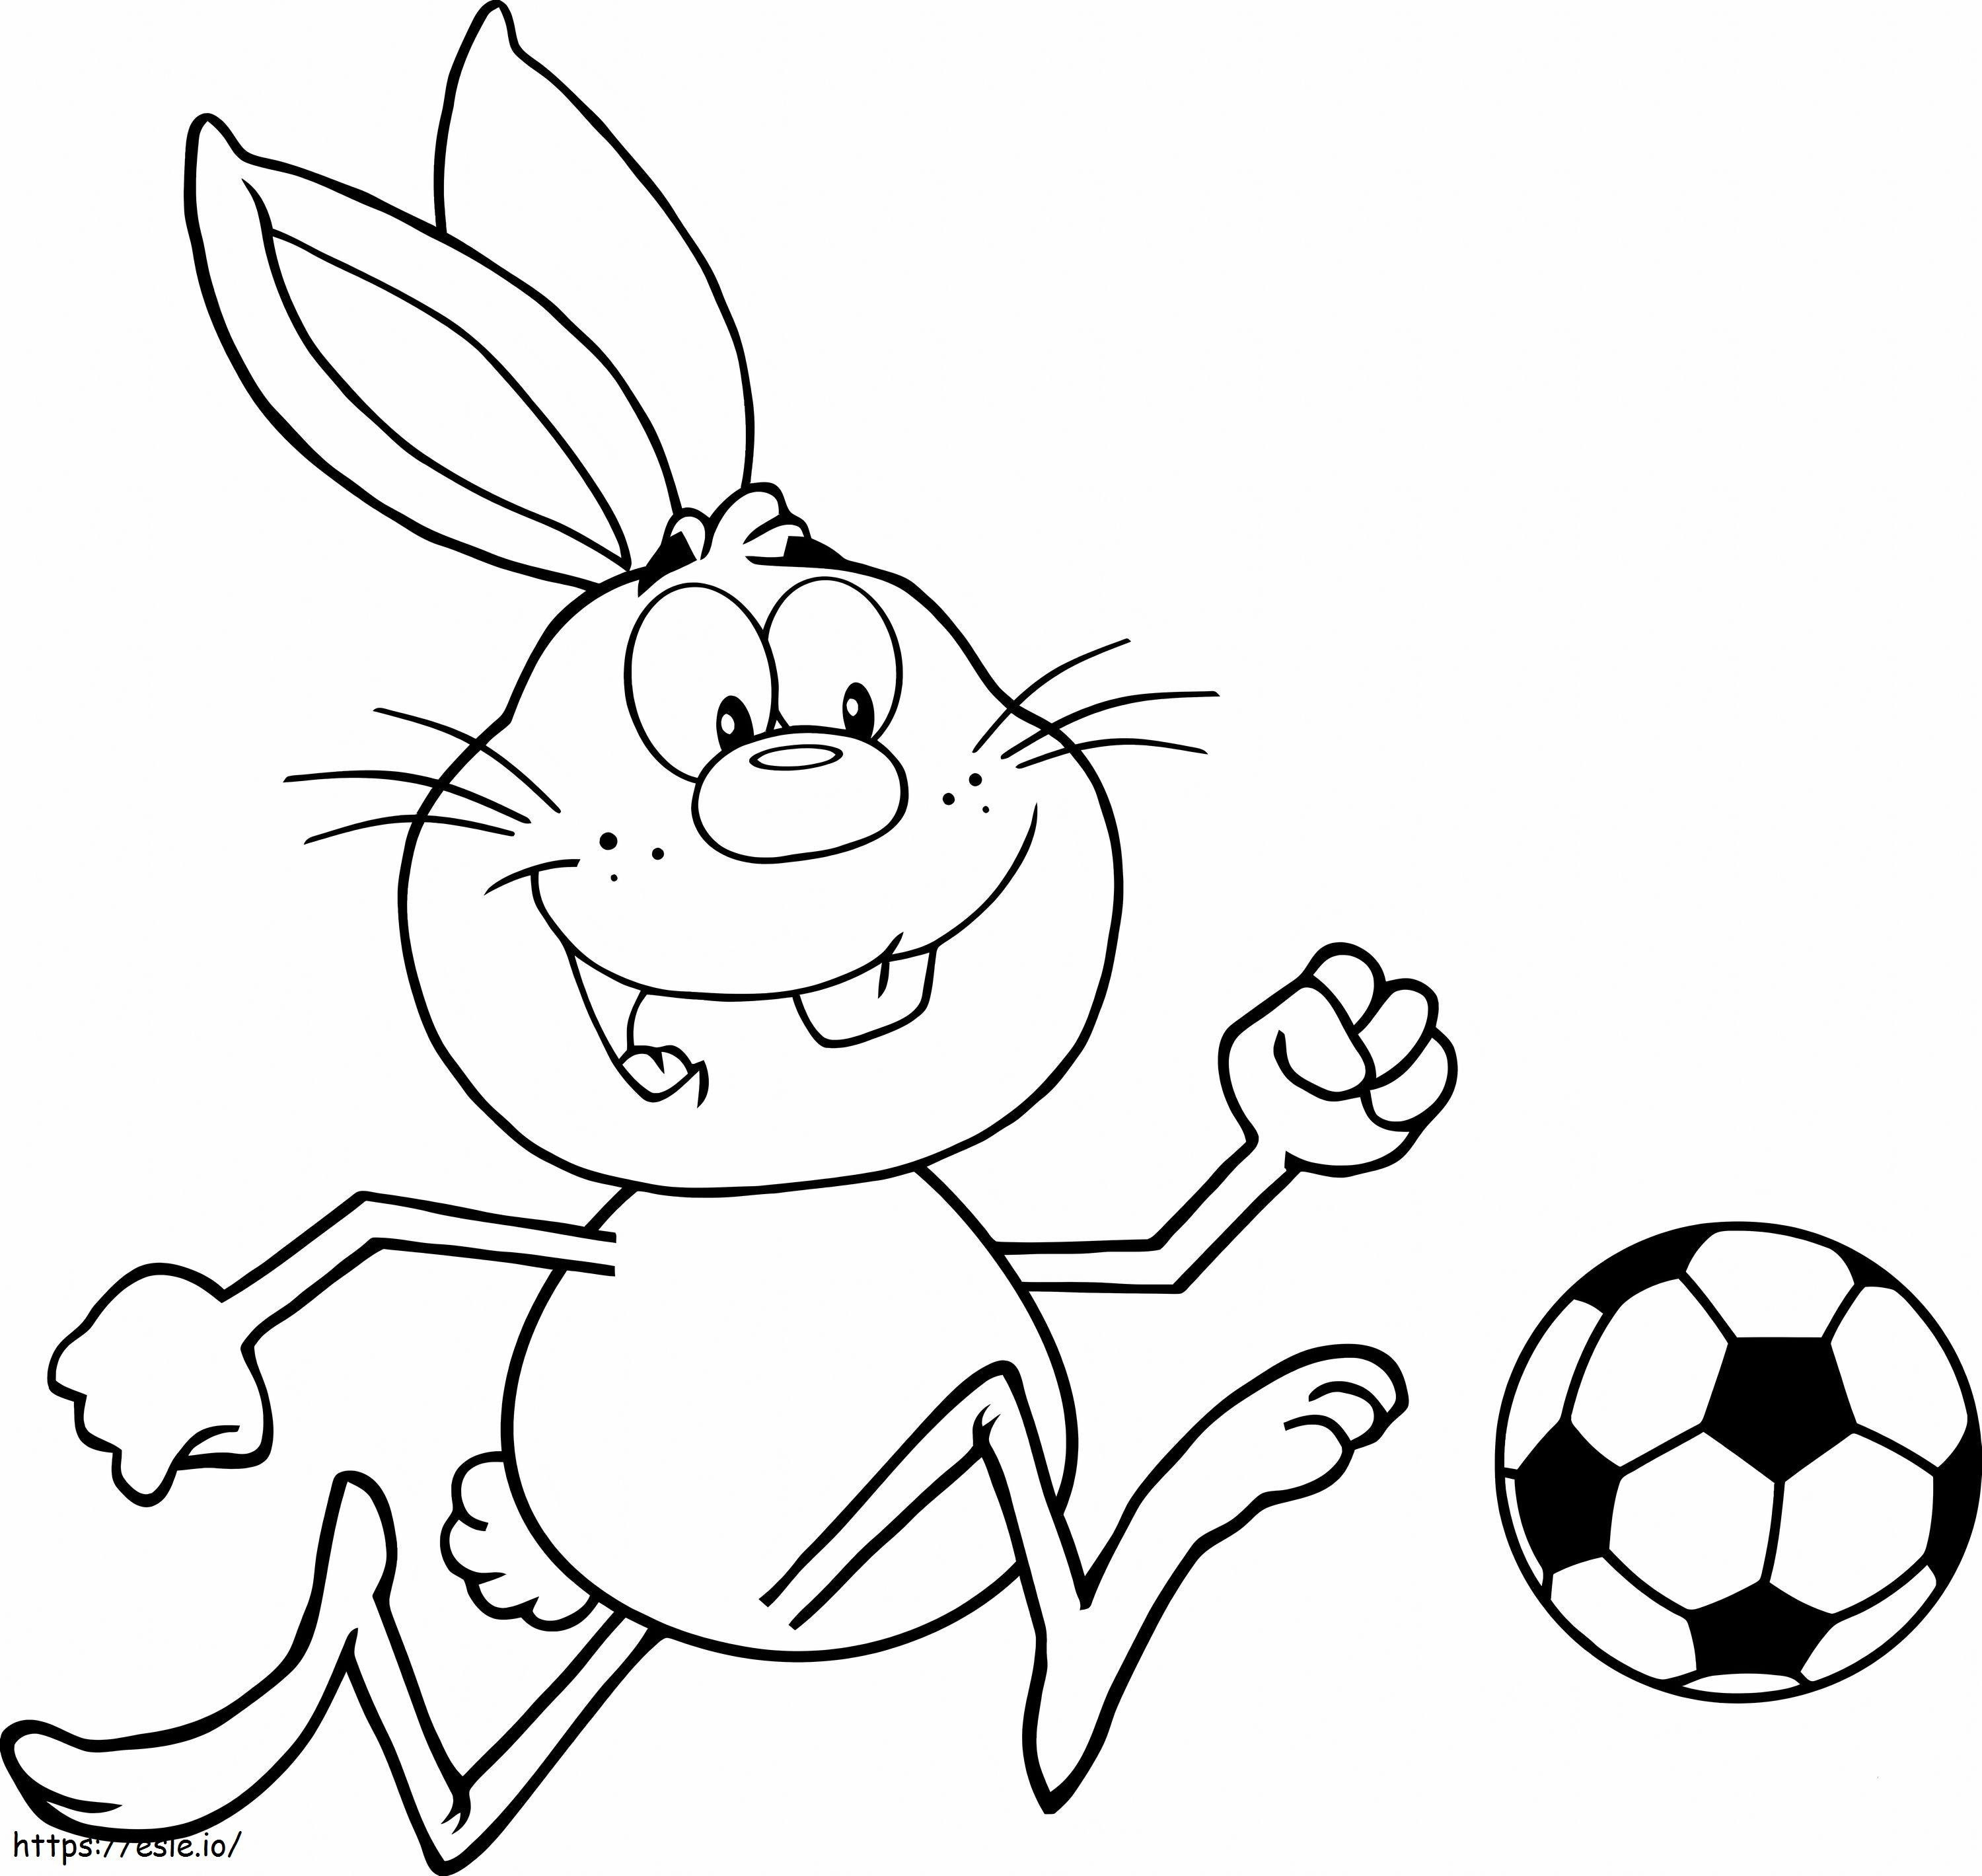 Coniglio che gioca a calcio da colorare